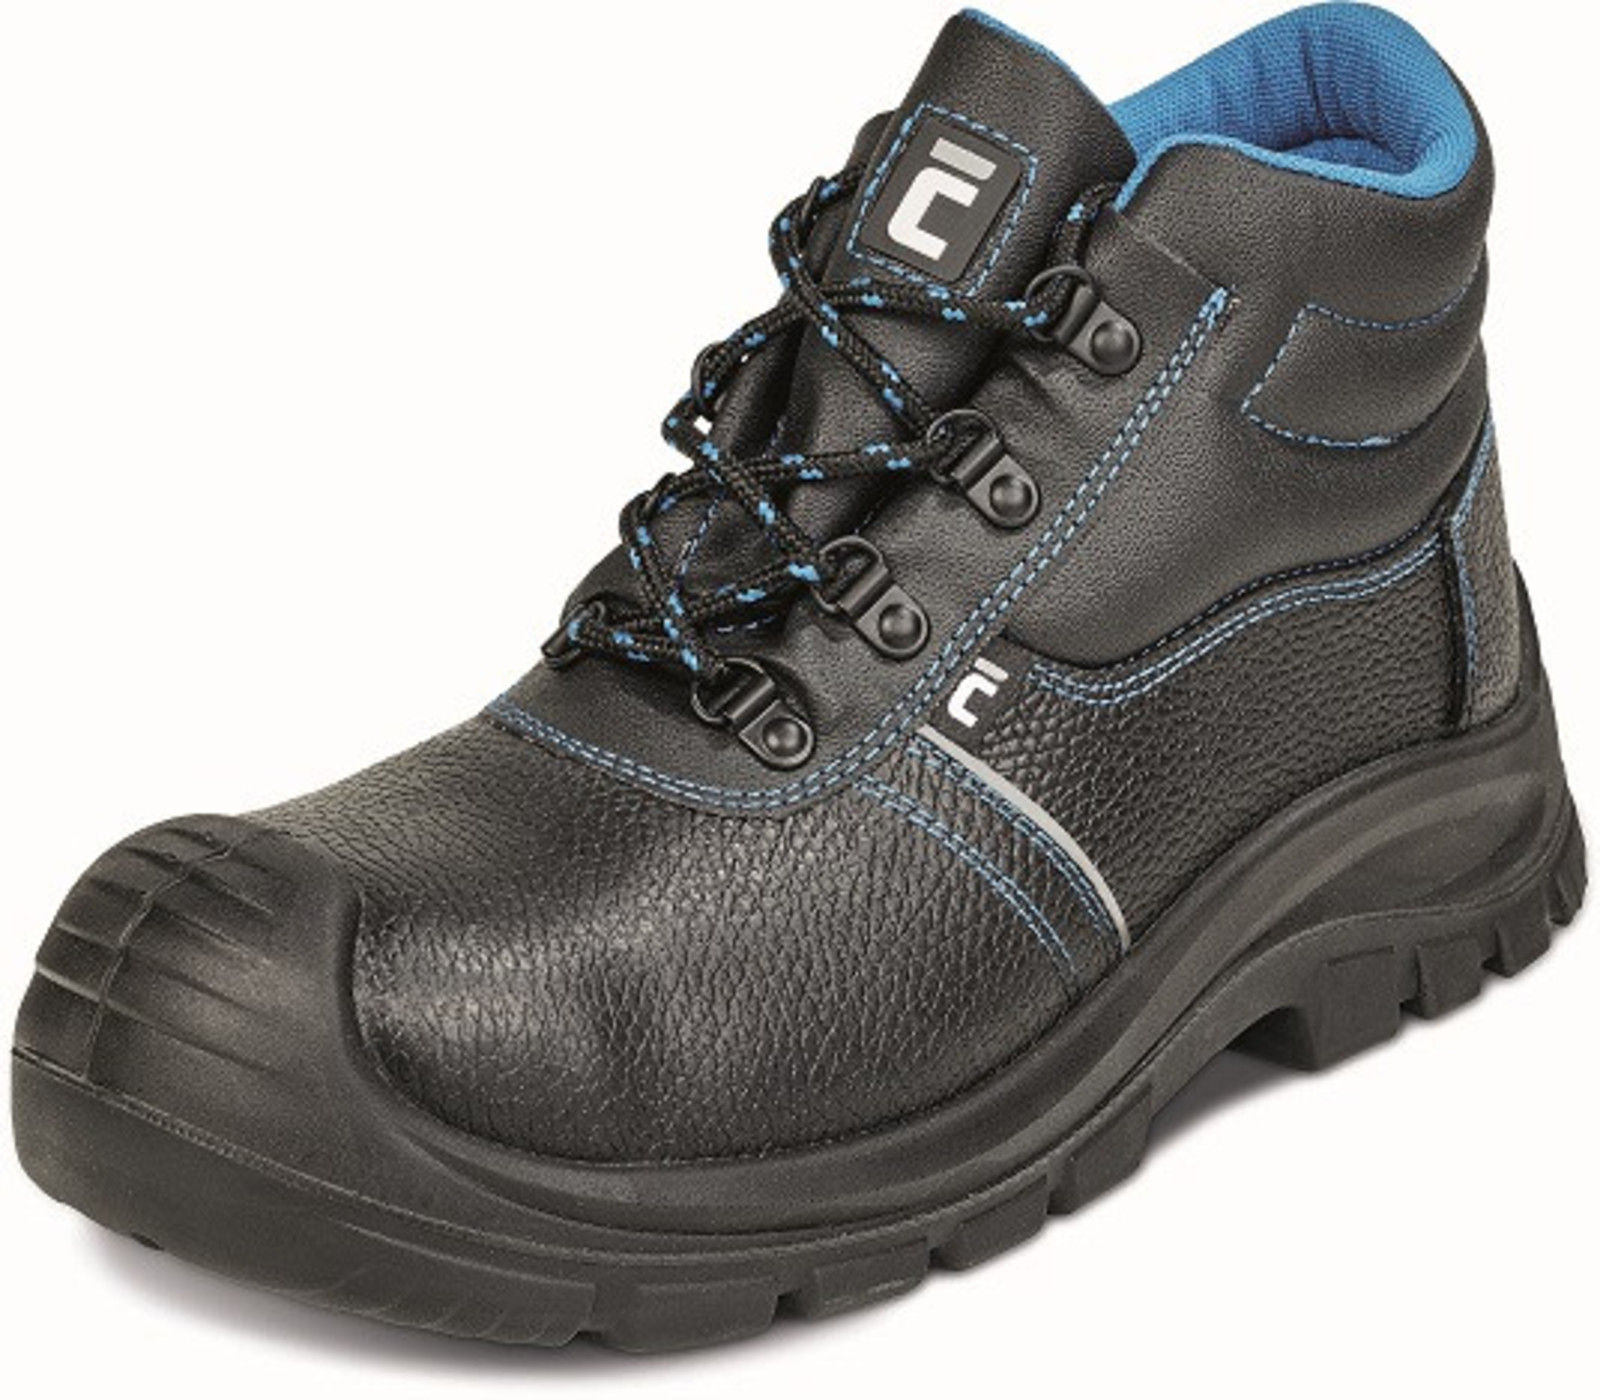 Bezpečnostná obuv Raven XT S1P - veľkosť: 40, farba: čierna